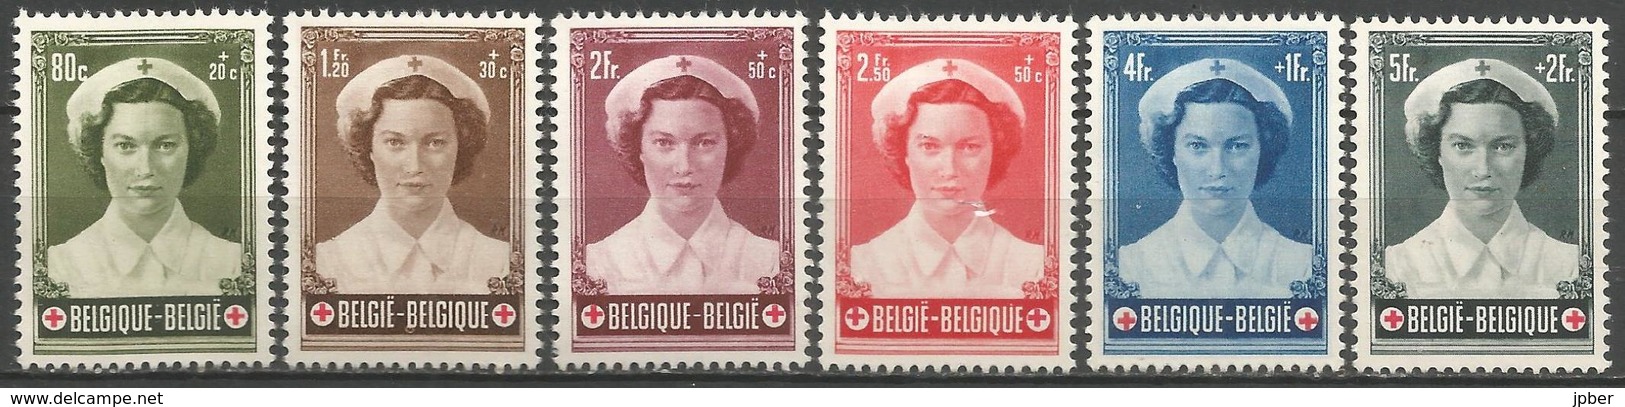 (E058) BELGIQUE - N°912à917 * - Croix-Rouge - Princesse Joséphine -Charlotte - Unused Stamps